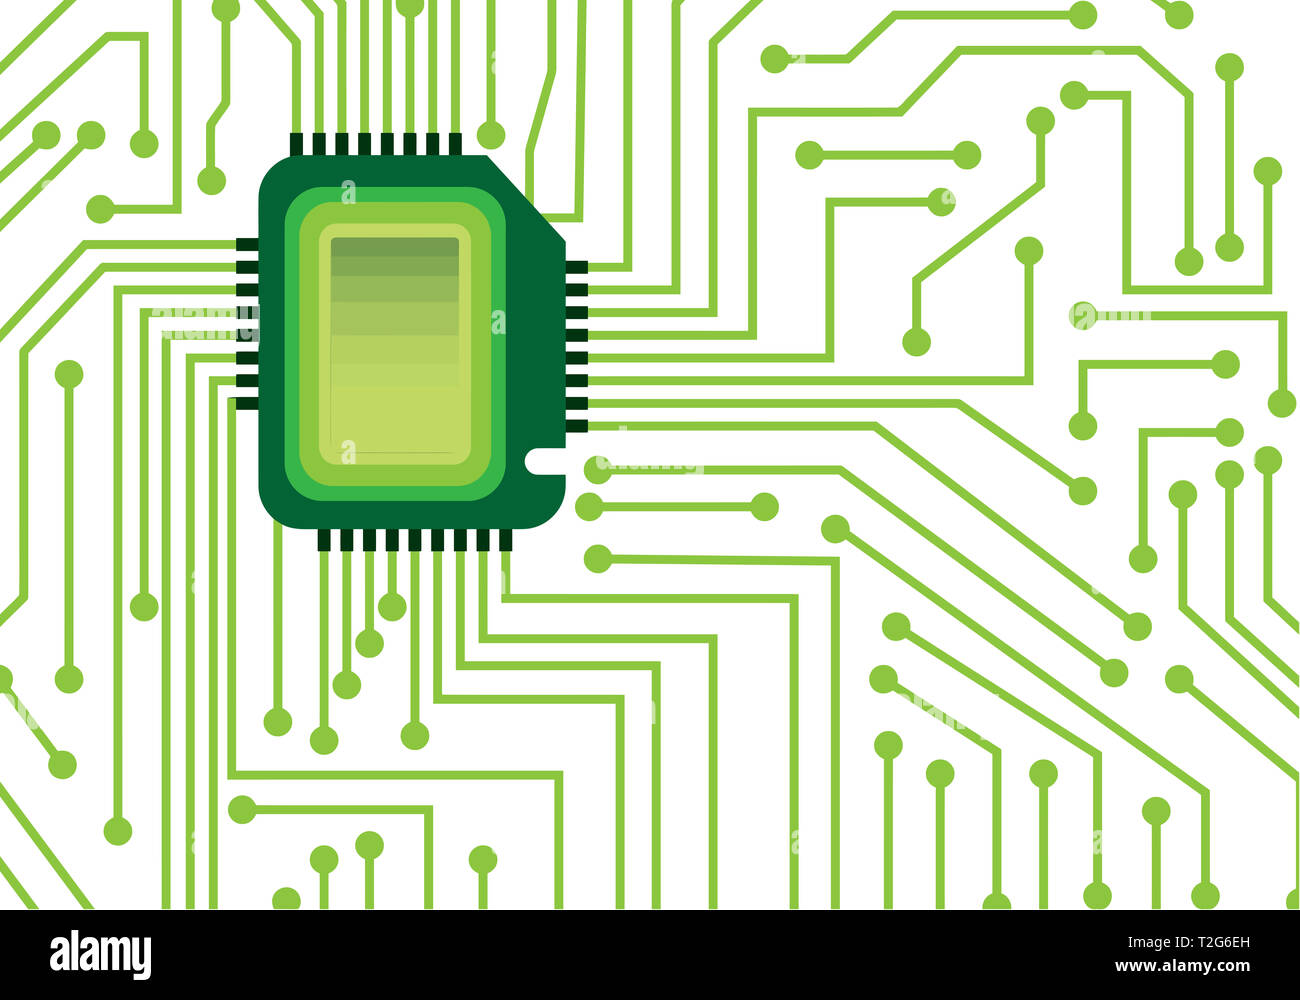 Réseau électrique intégré green tech illustration Banque D'Images